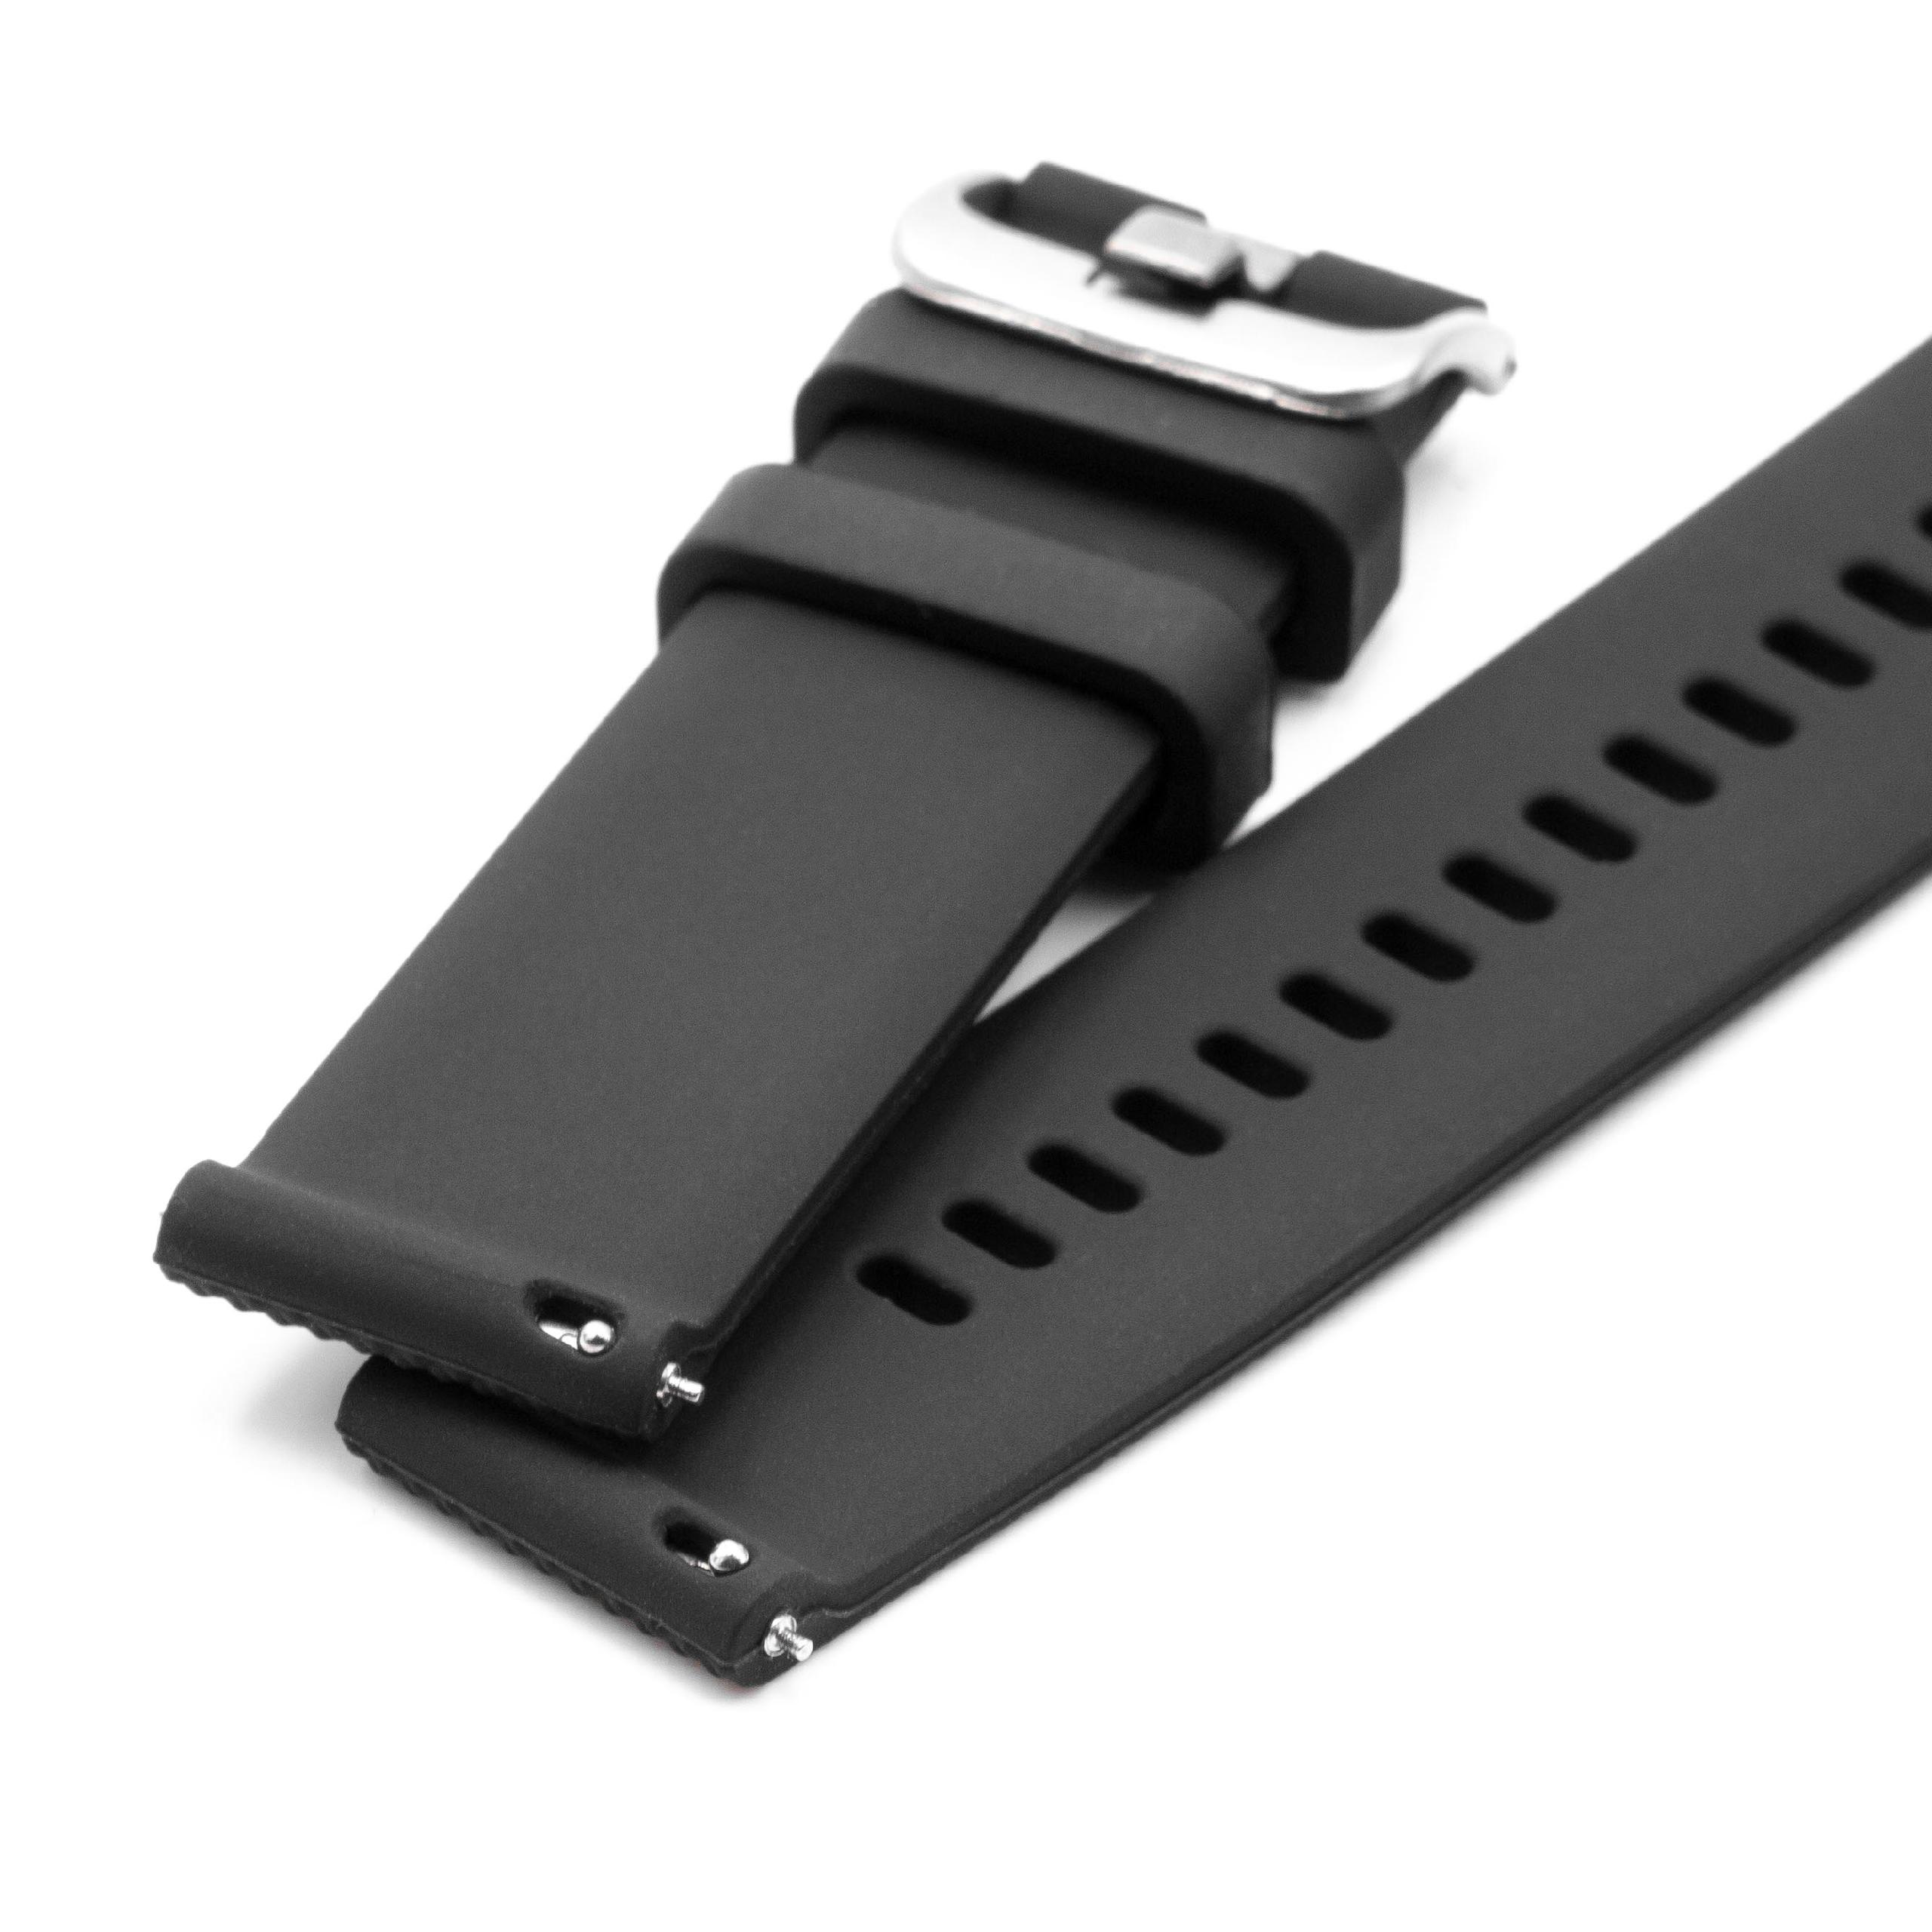 Armband S für Samsung Galaxy Watch Smartwatch - Bis 226 mm Gelenkumfang, Silikon, schwarz